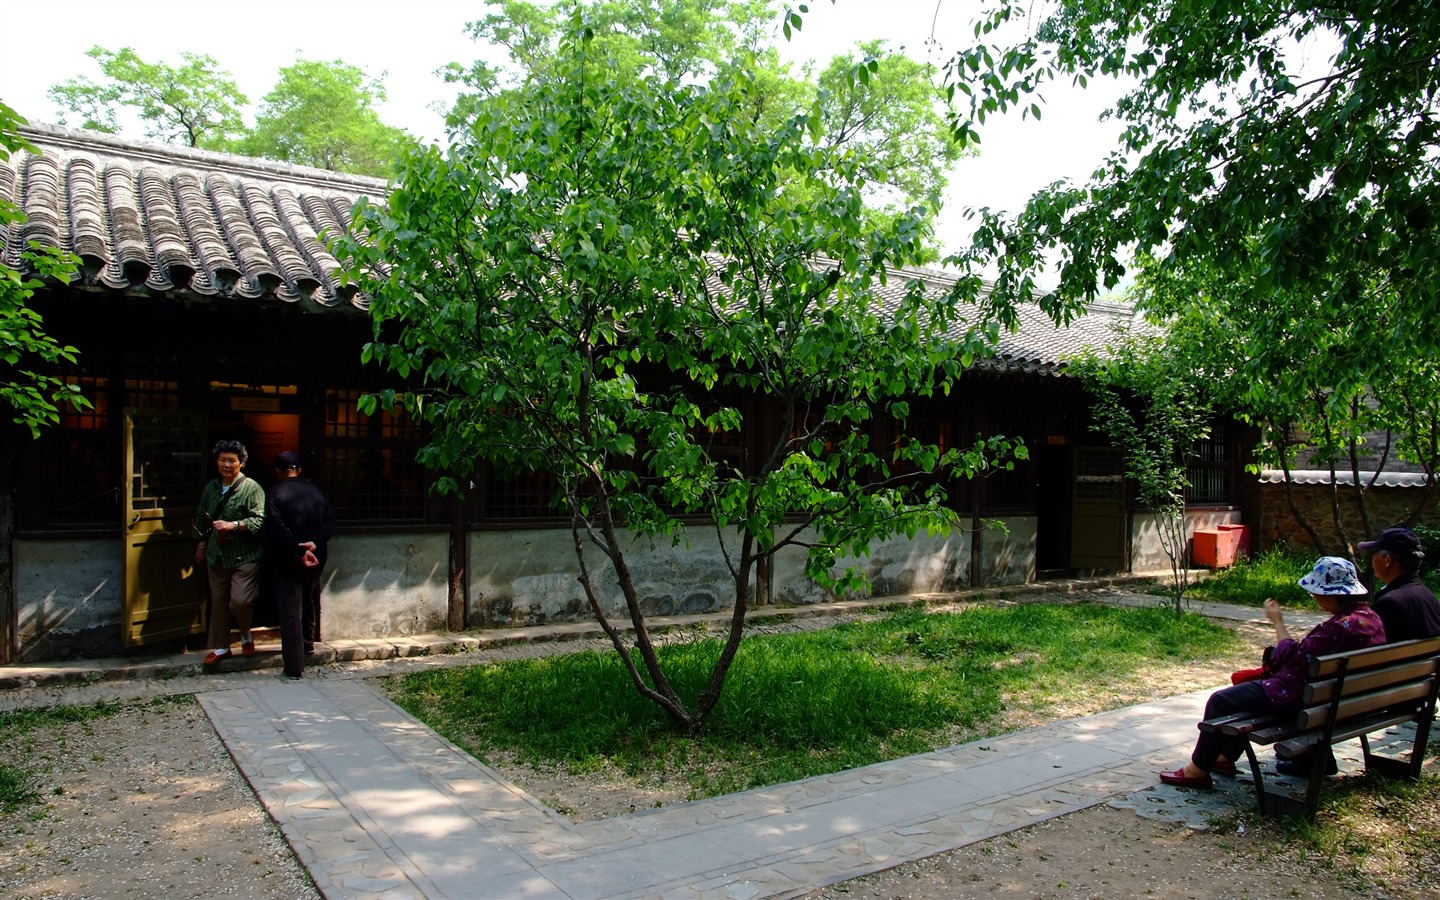 Xiangshan jardín principios del verano (obras barras de refuerzo) #18 - 1440x900